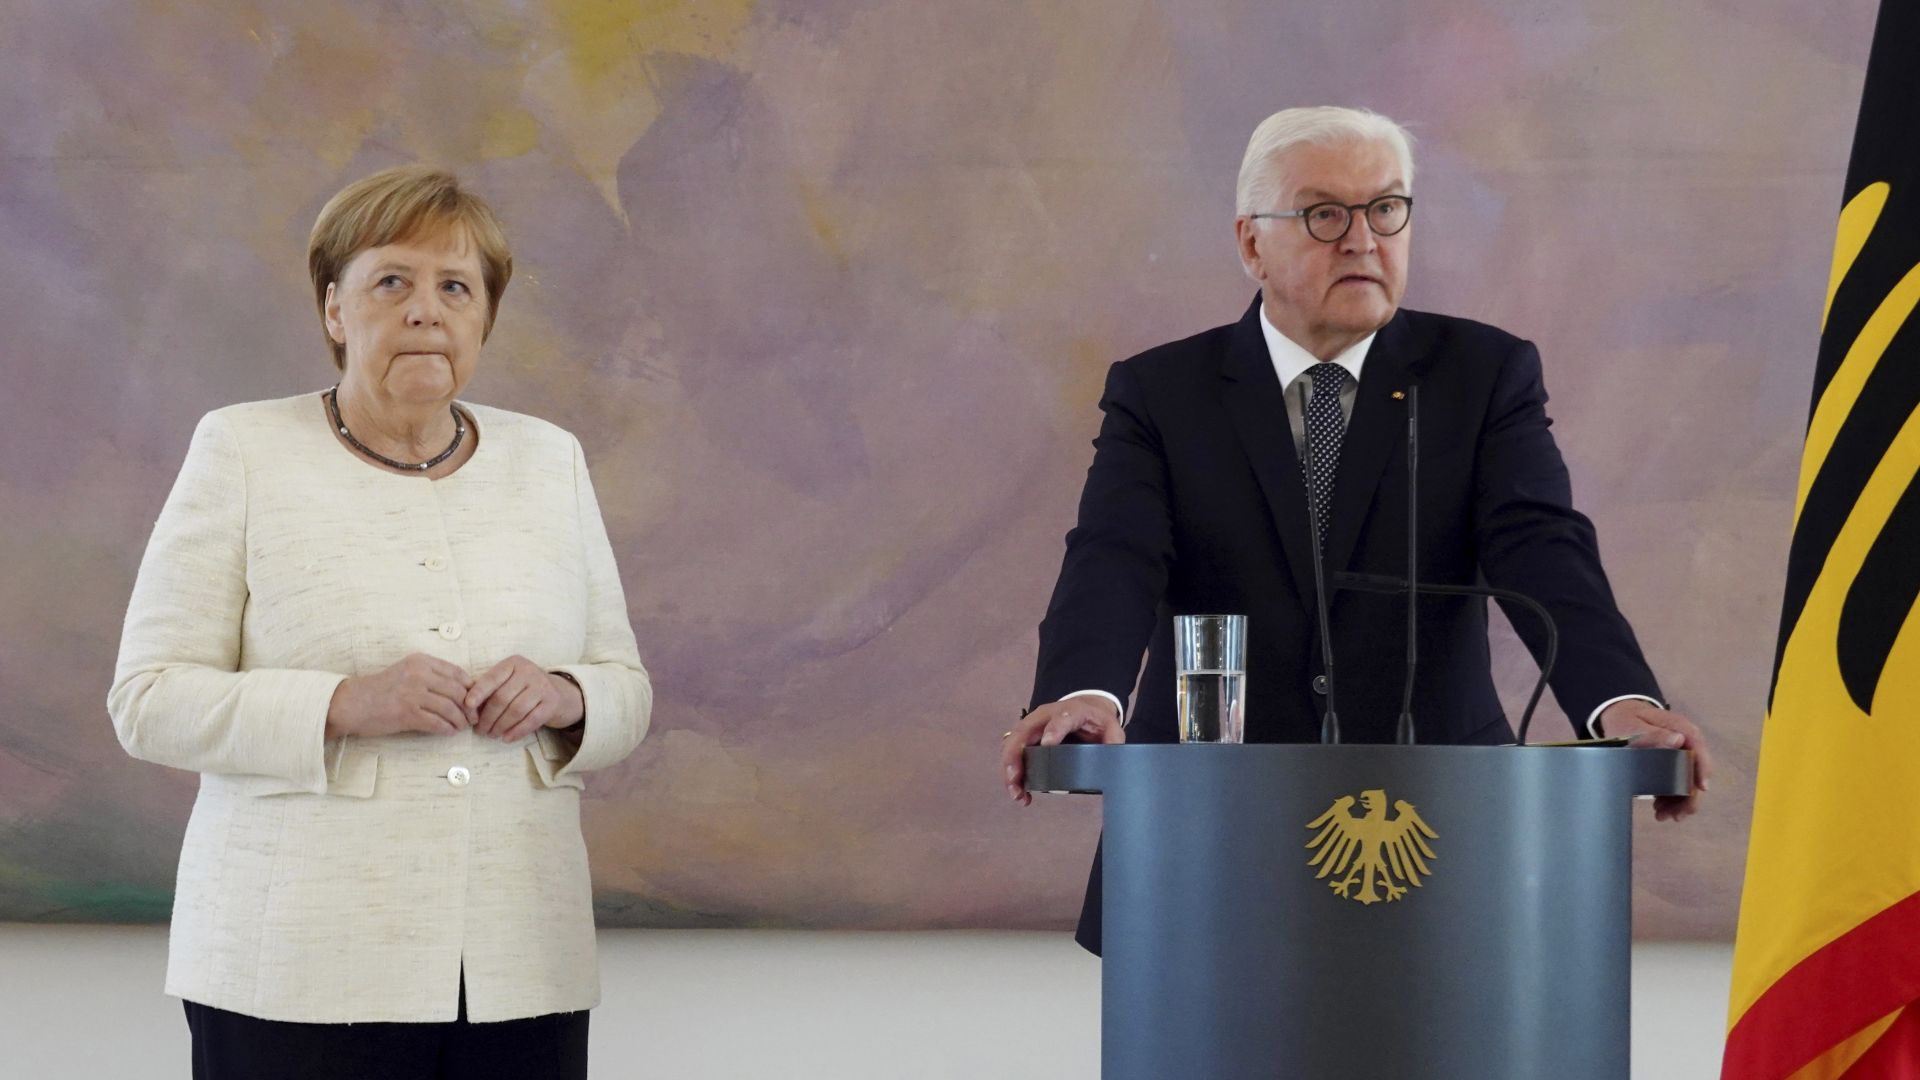  Меркел отново се разтрепери на официално събитие